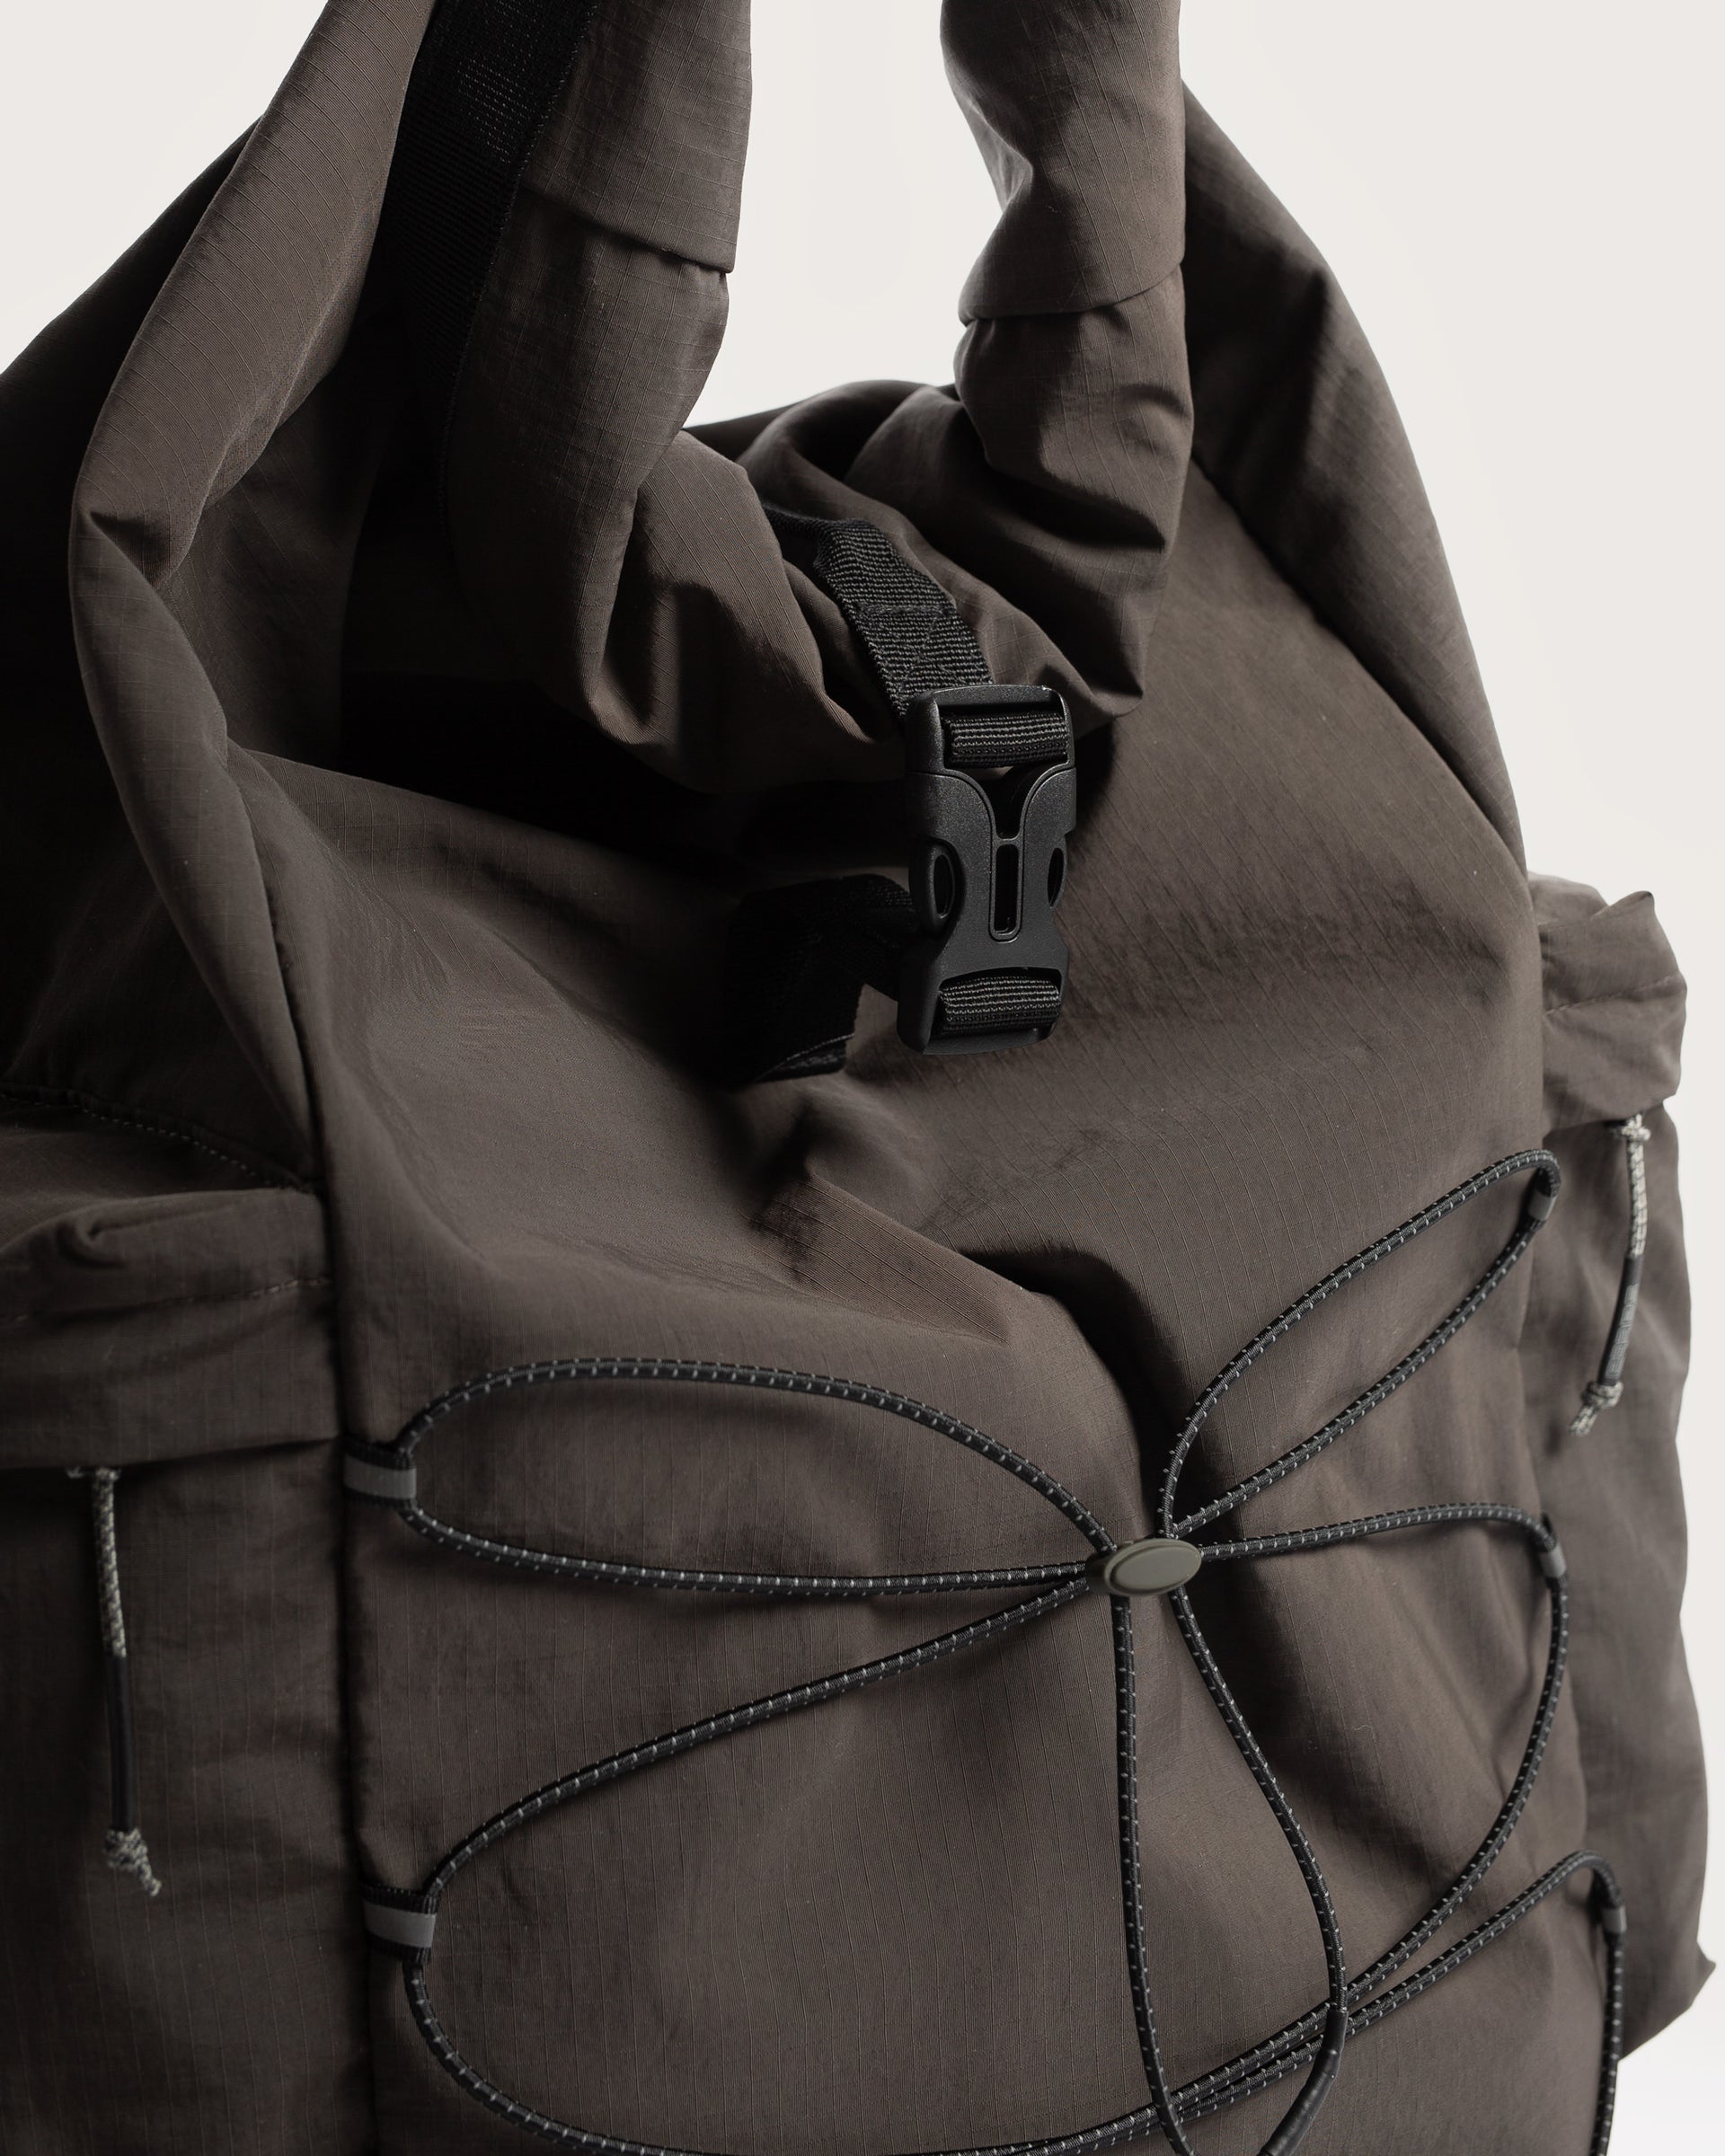 Rolltop Bag - Charcoal